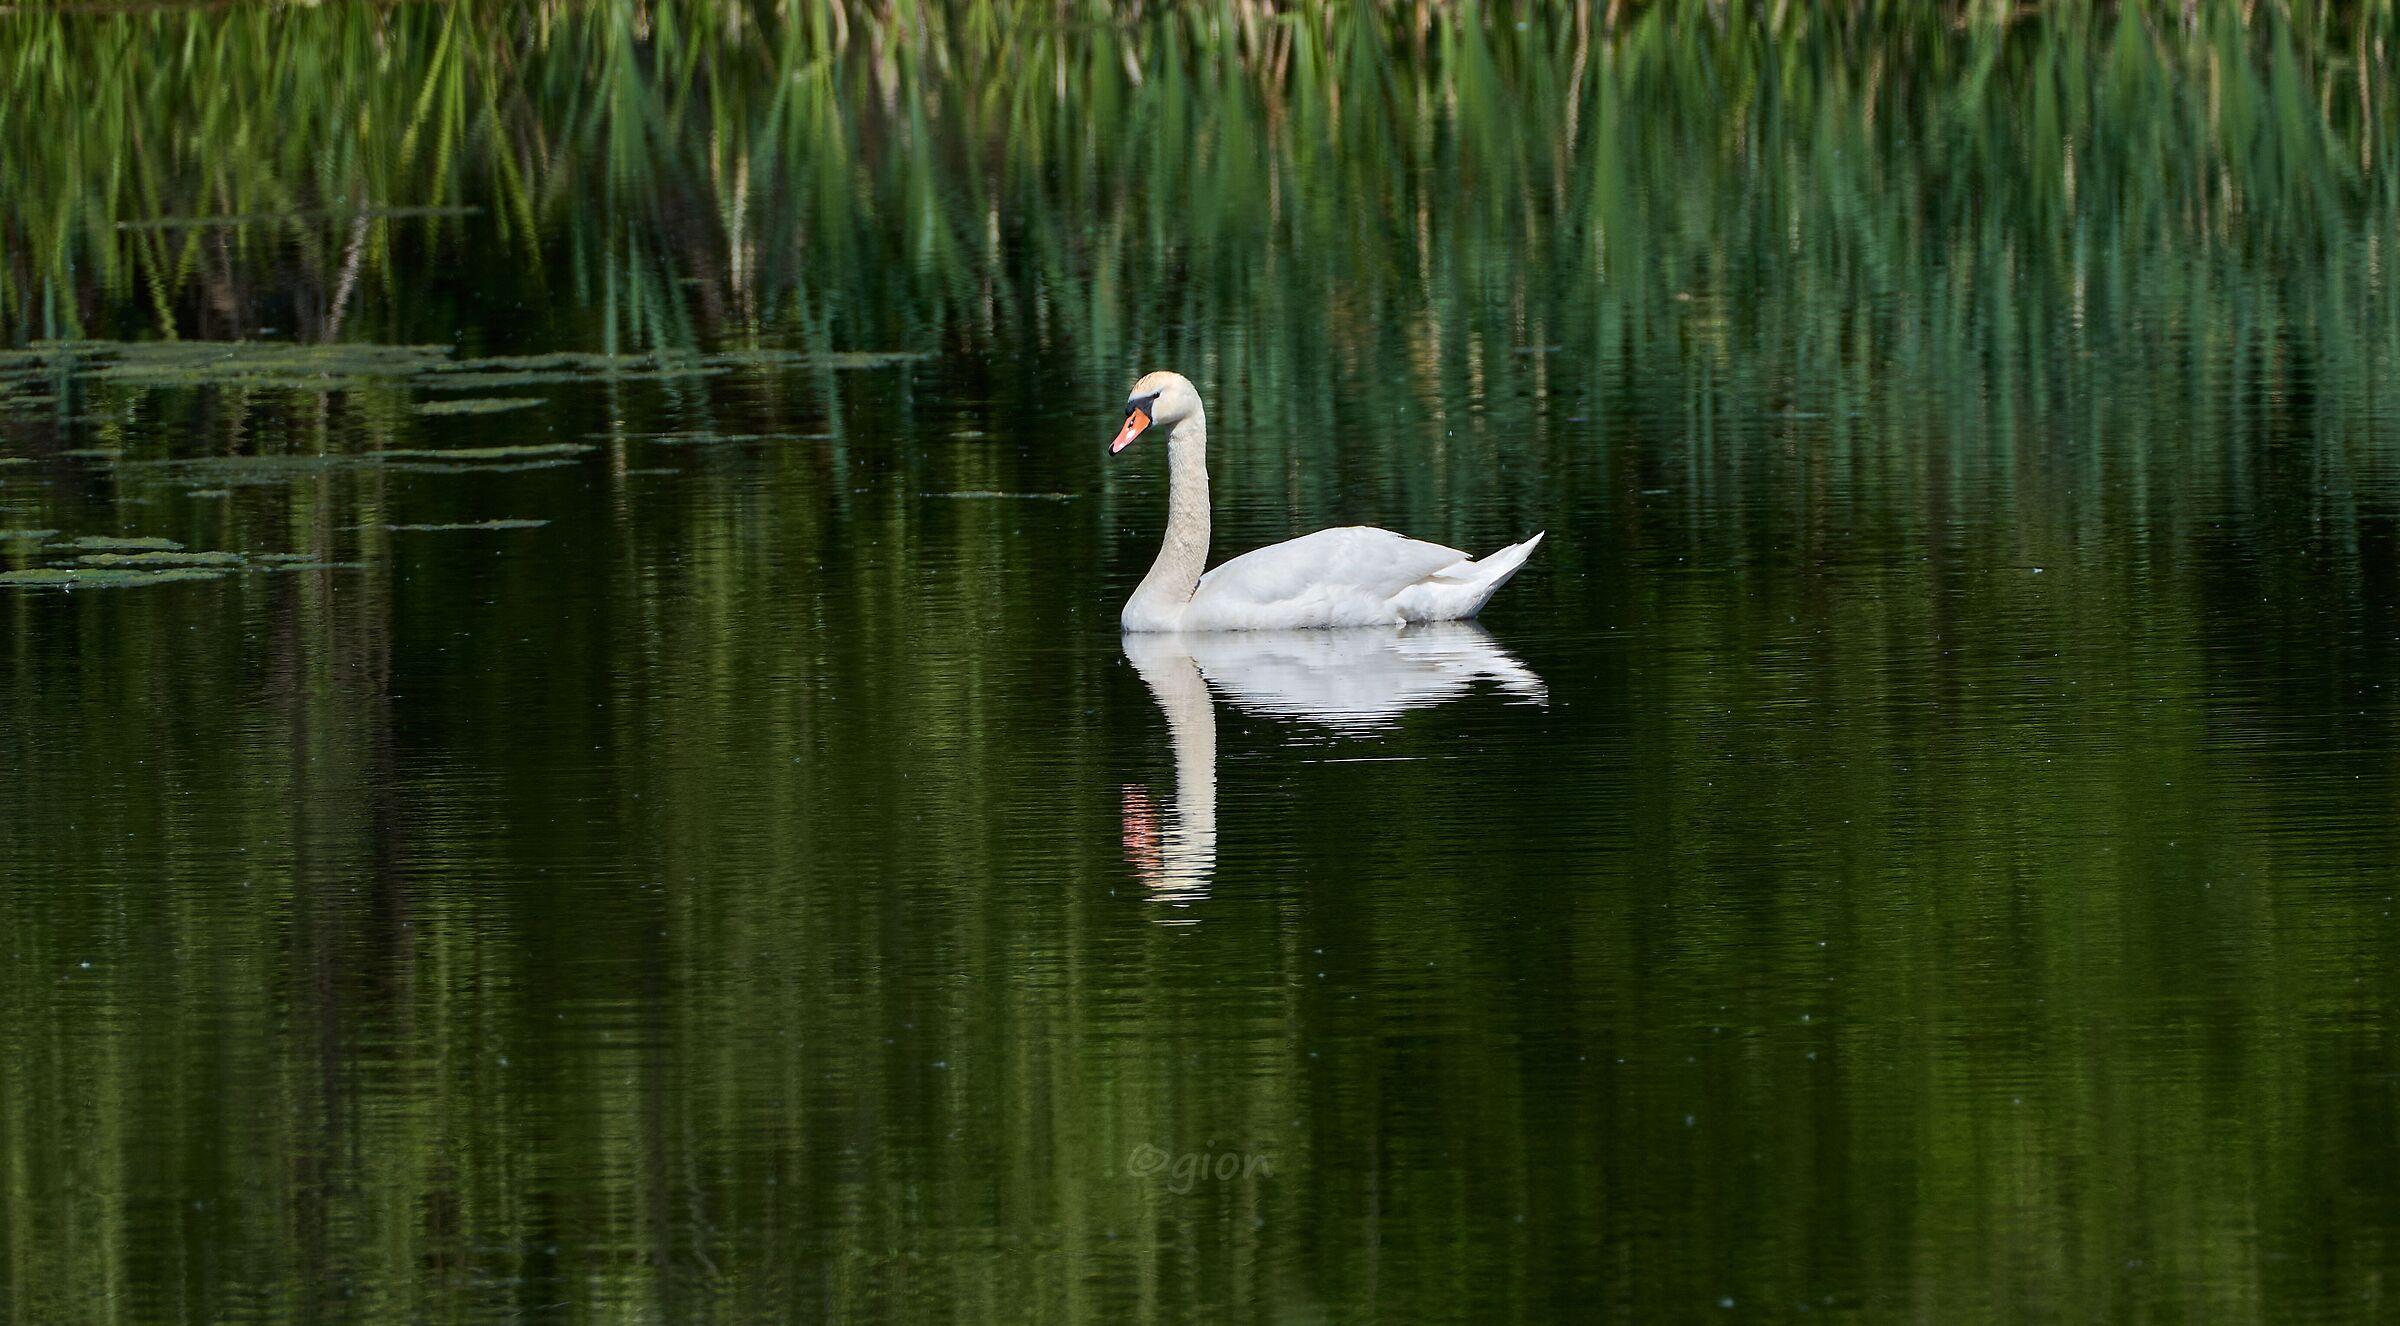 Painted swan...